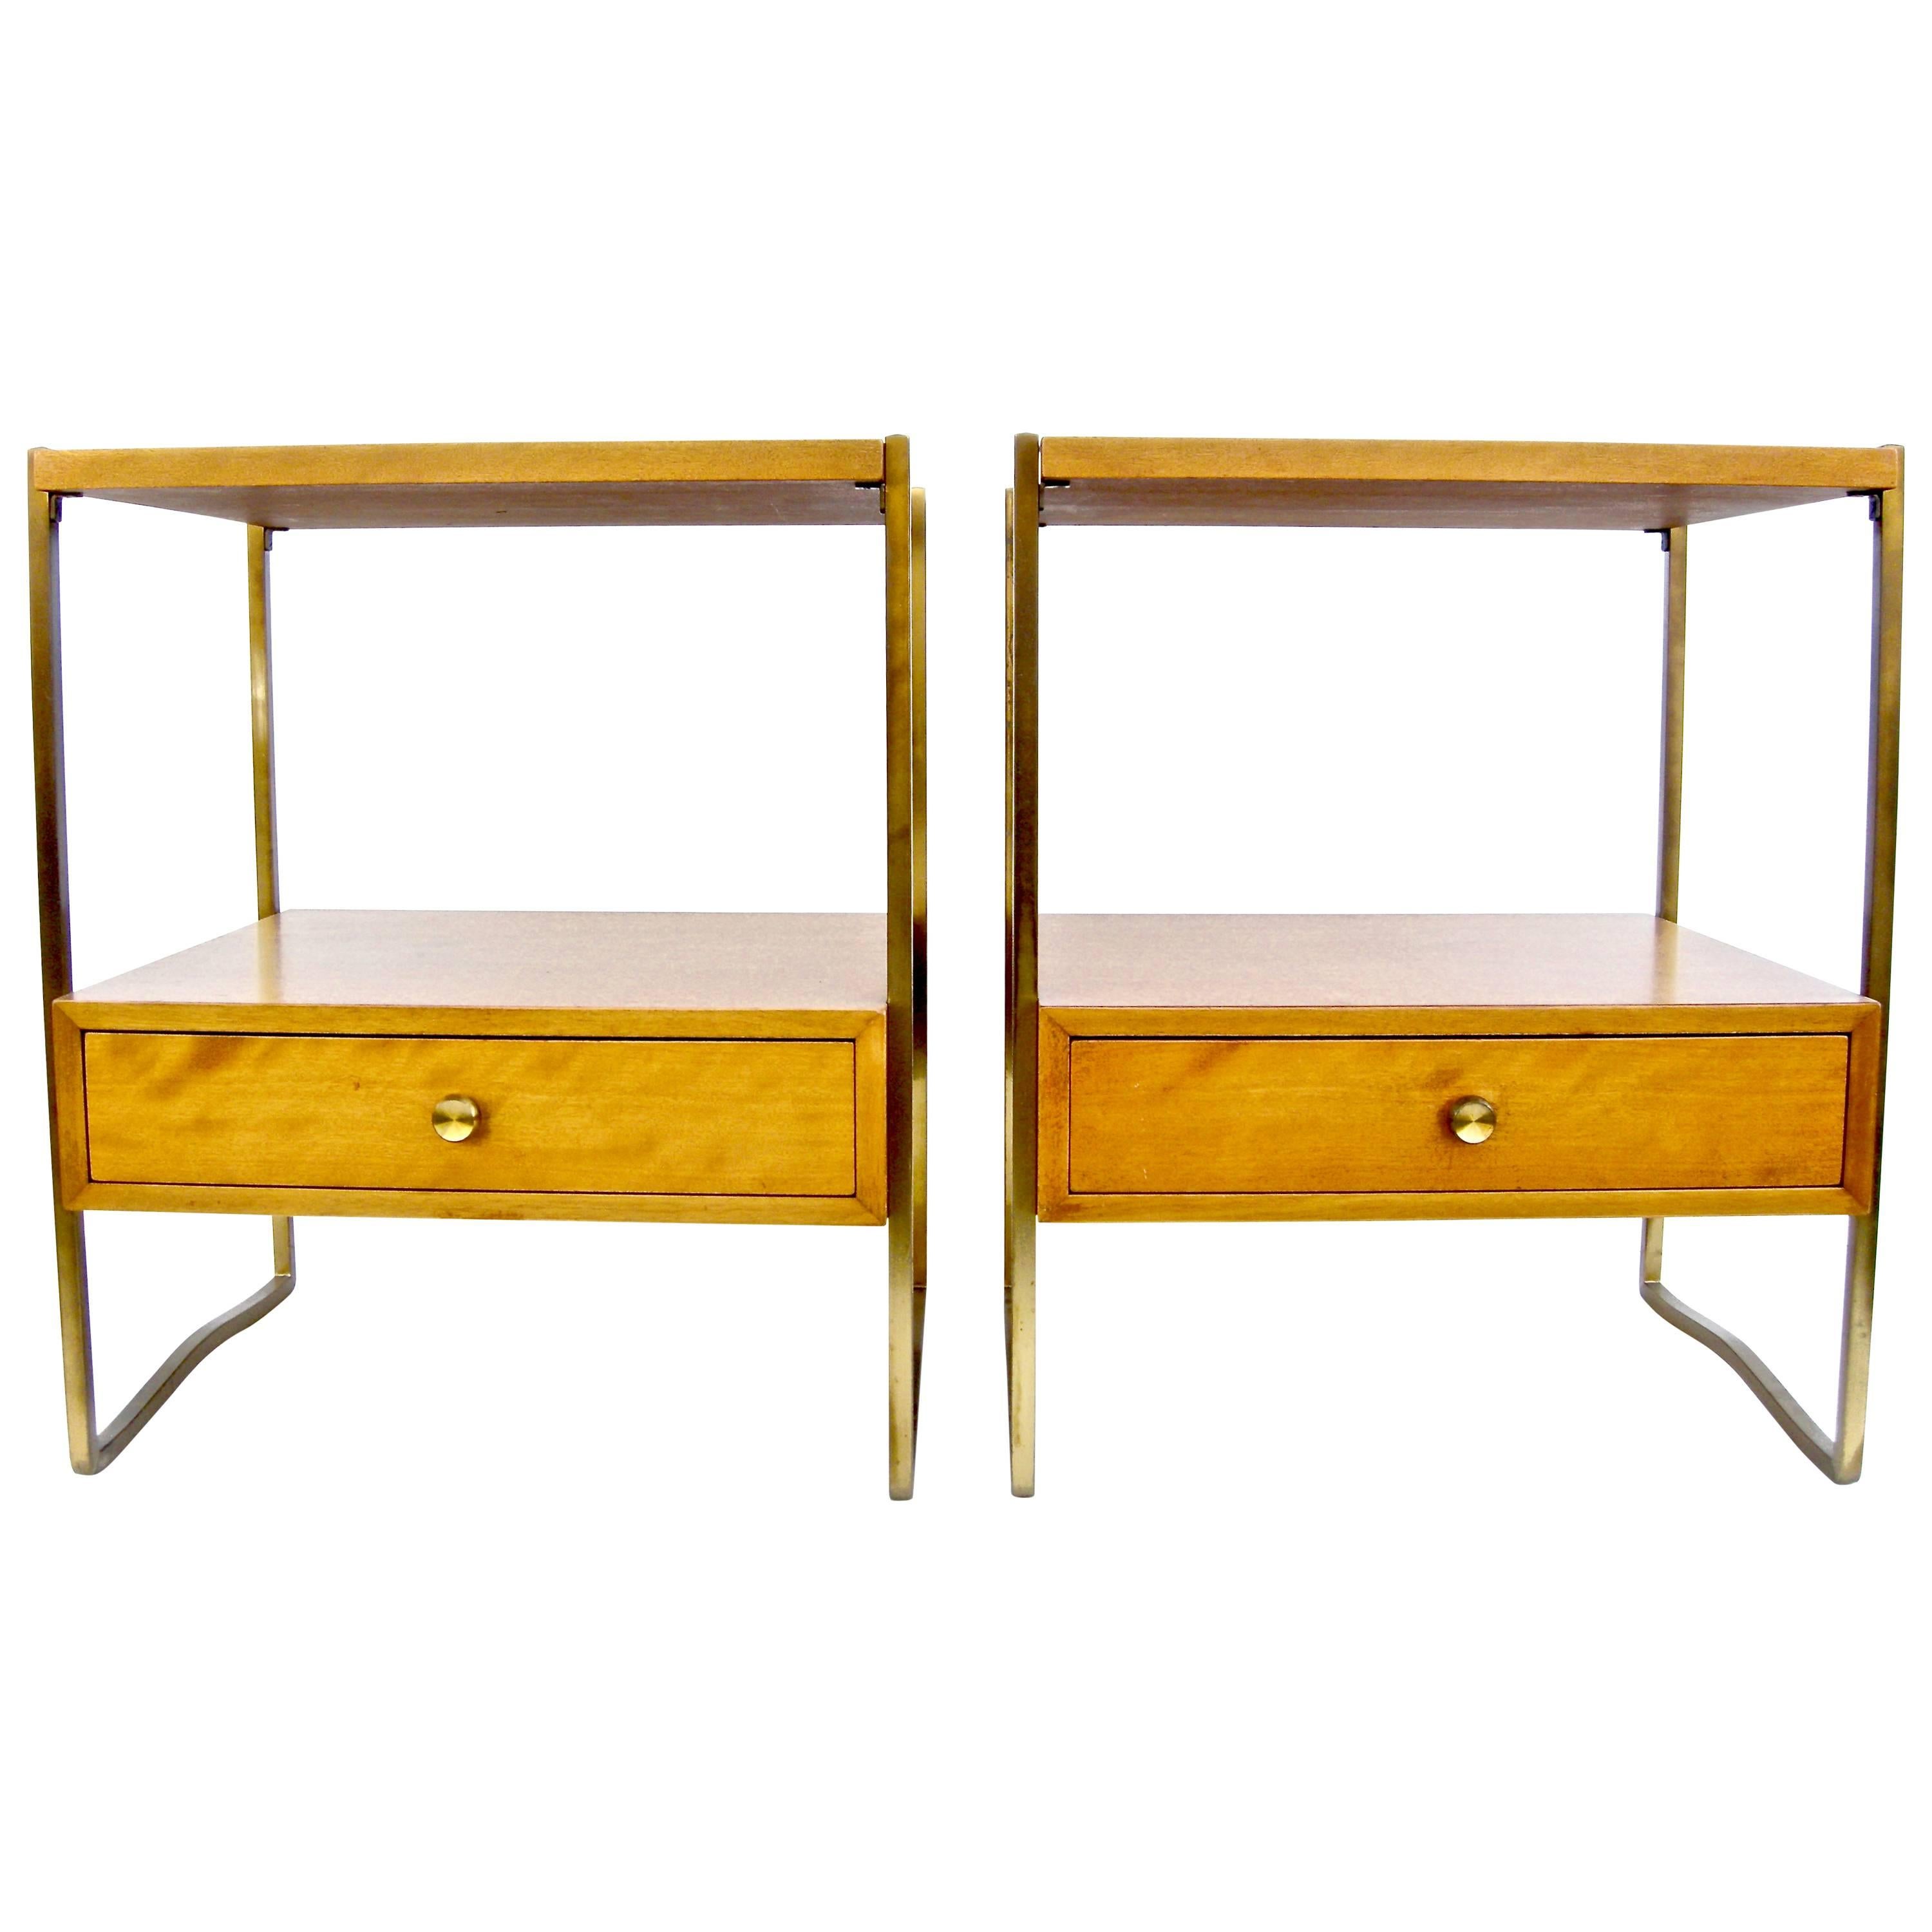 Pair of Kittinger Modernist Side Tables